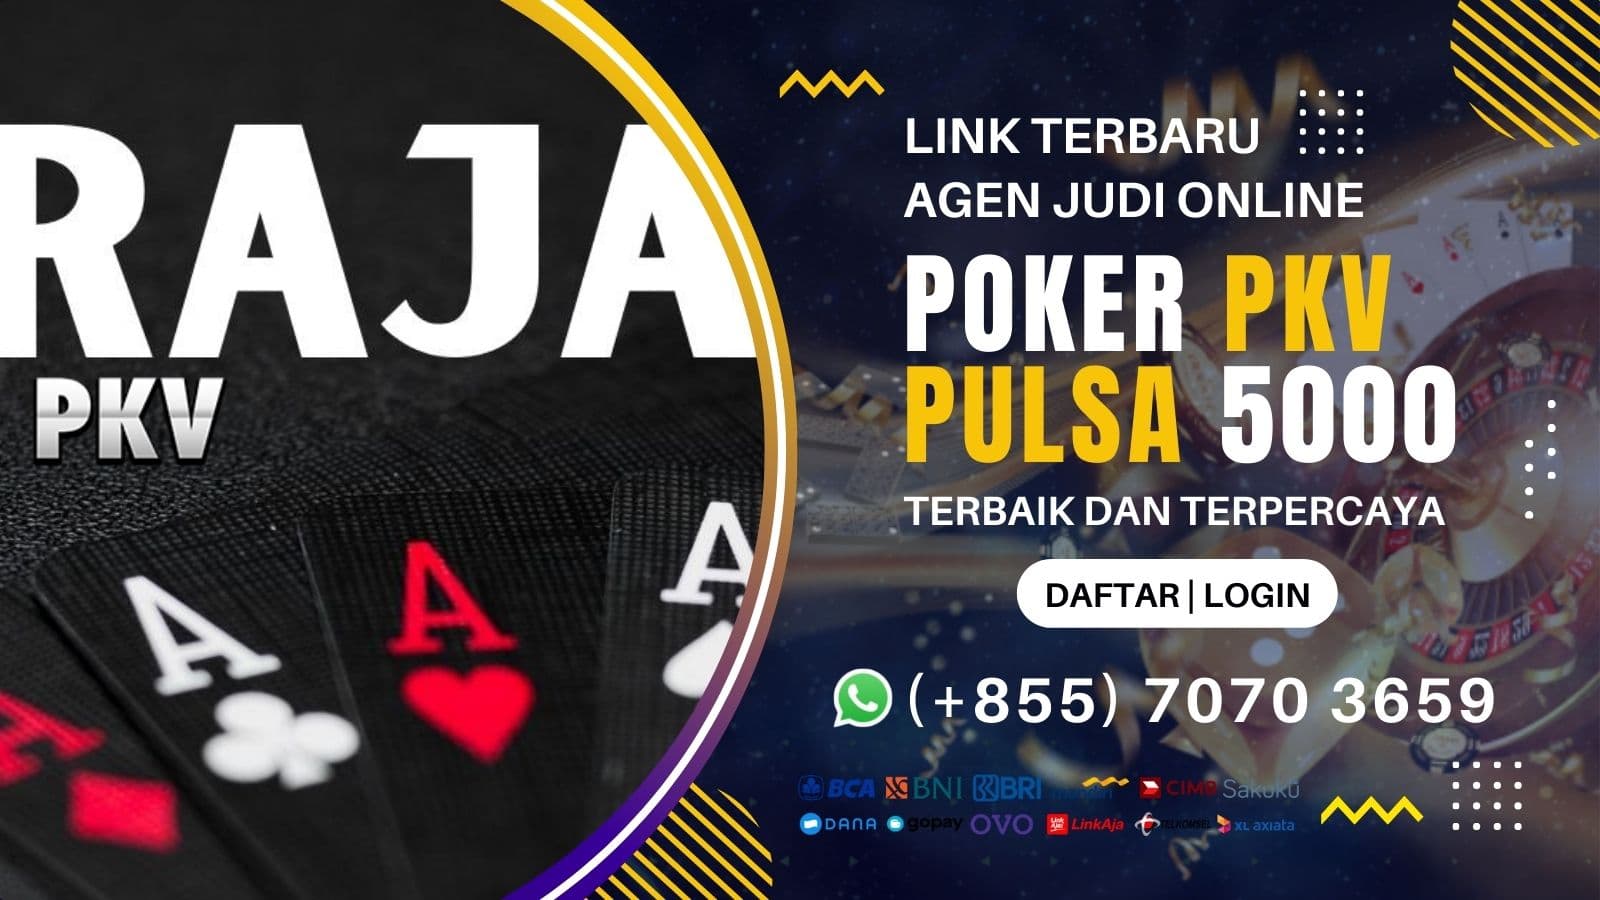 poker-pkv-pulsa-5000.jpeg?a7a3ec5e584736e3826c73f545b5d2ae